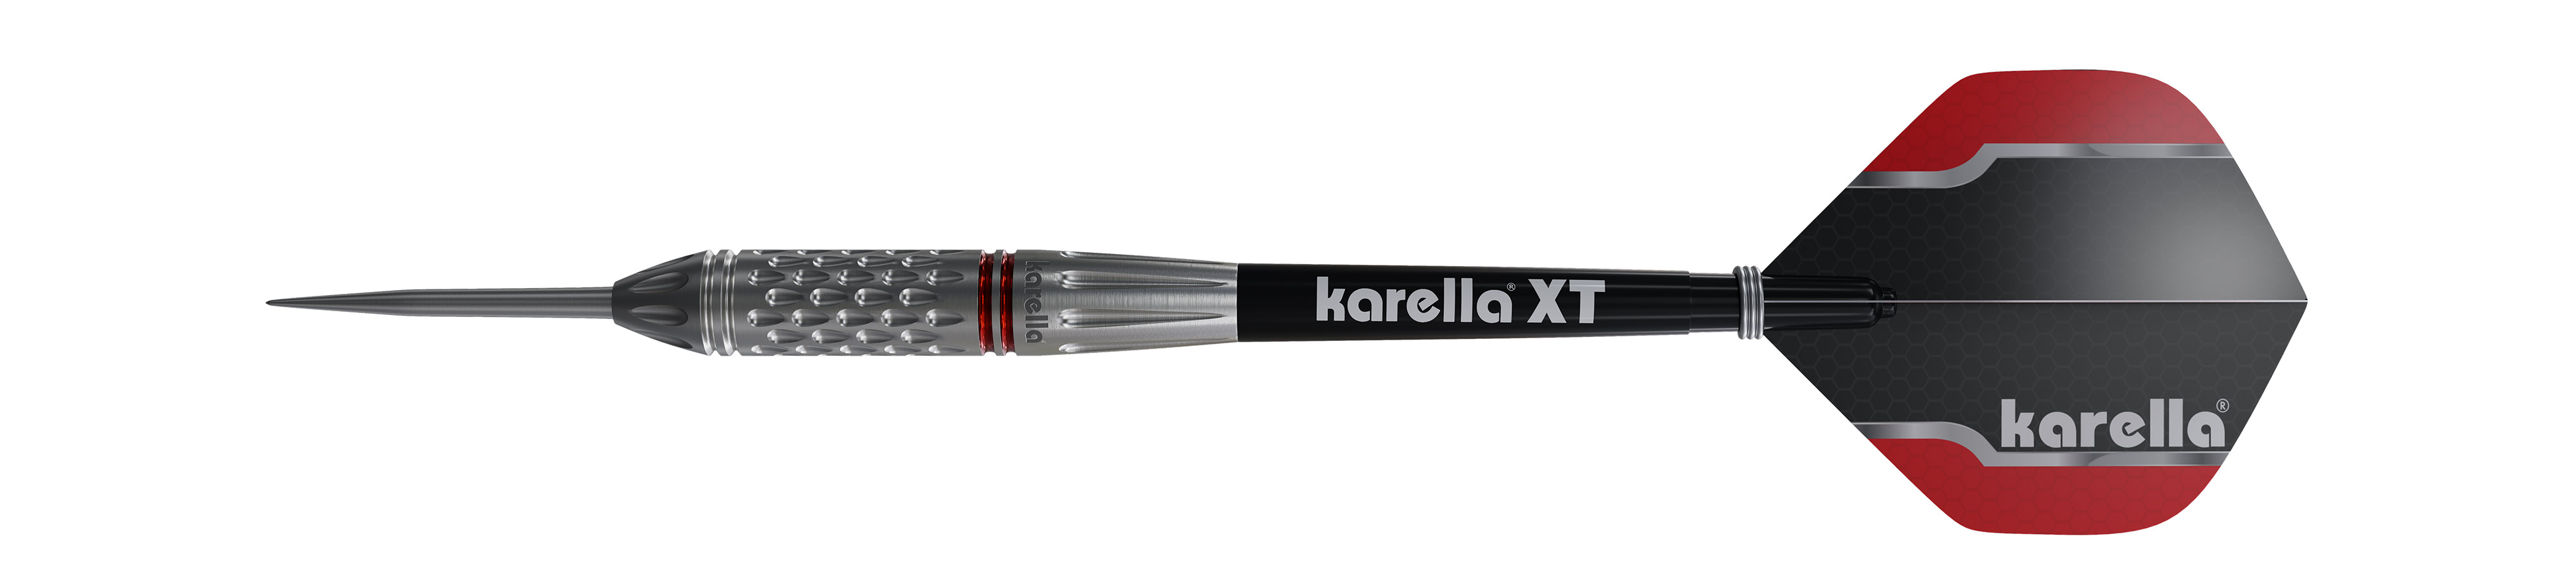 Steeldart Karella Commander, silber, 90% Tungsten, 21g oder 23g